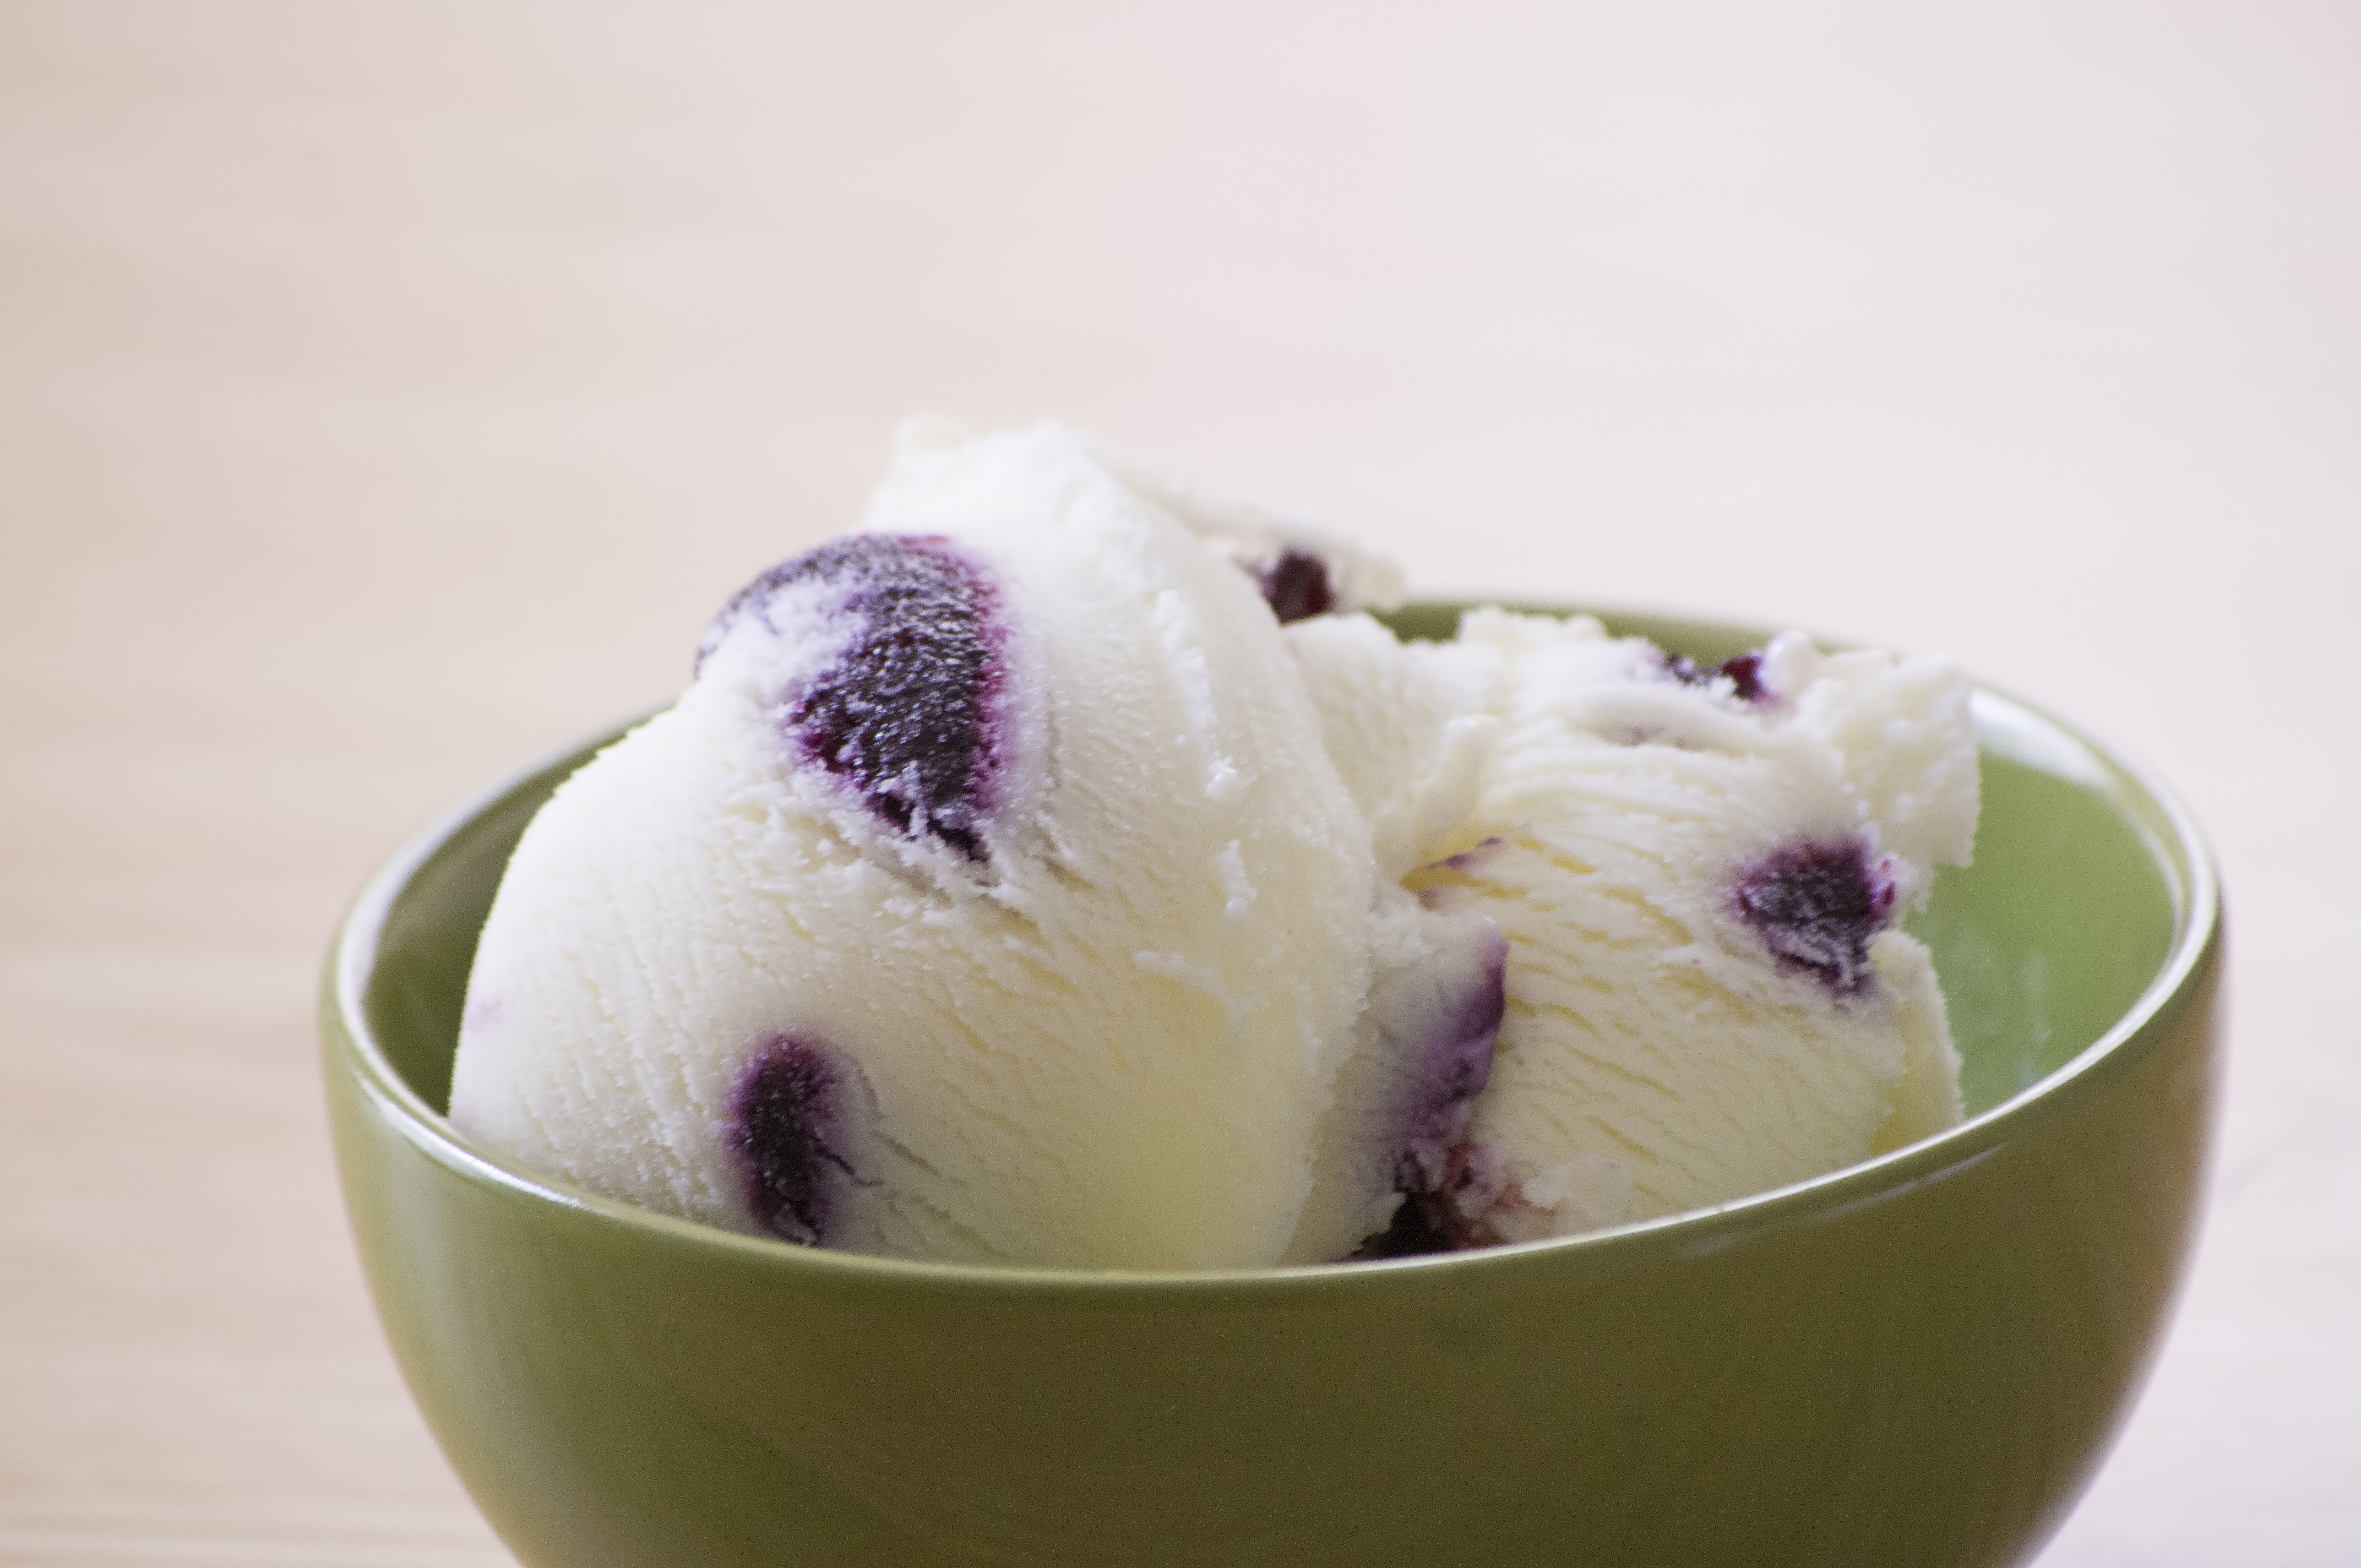 Blueberry ice cream photo